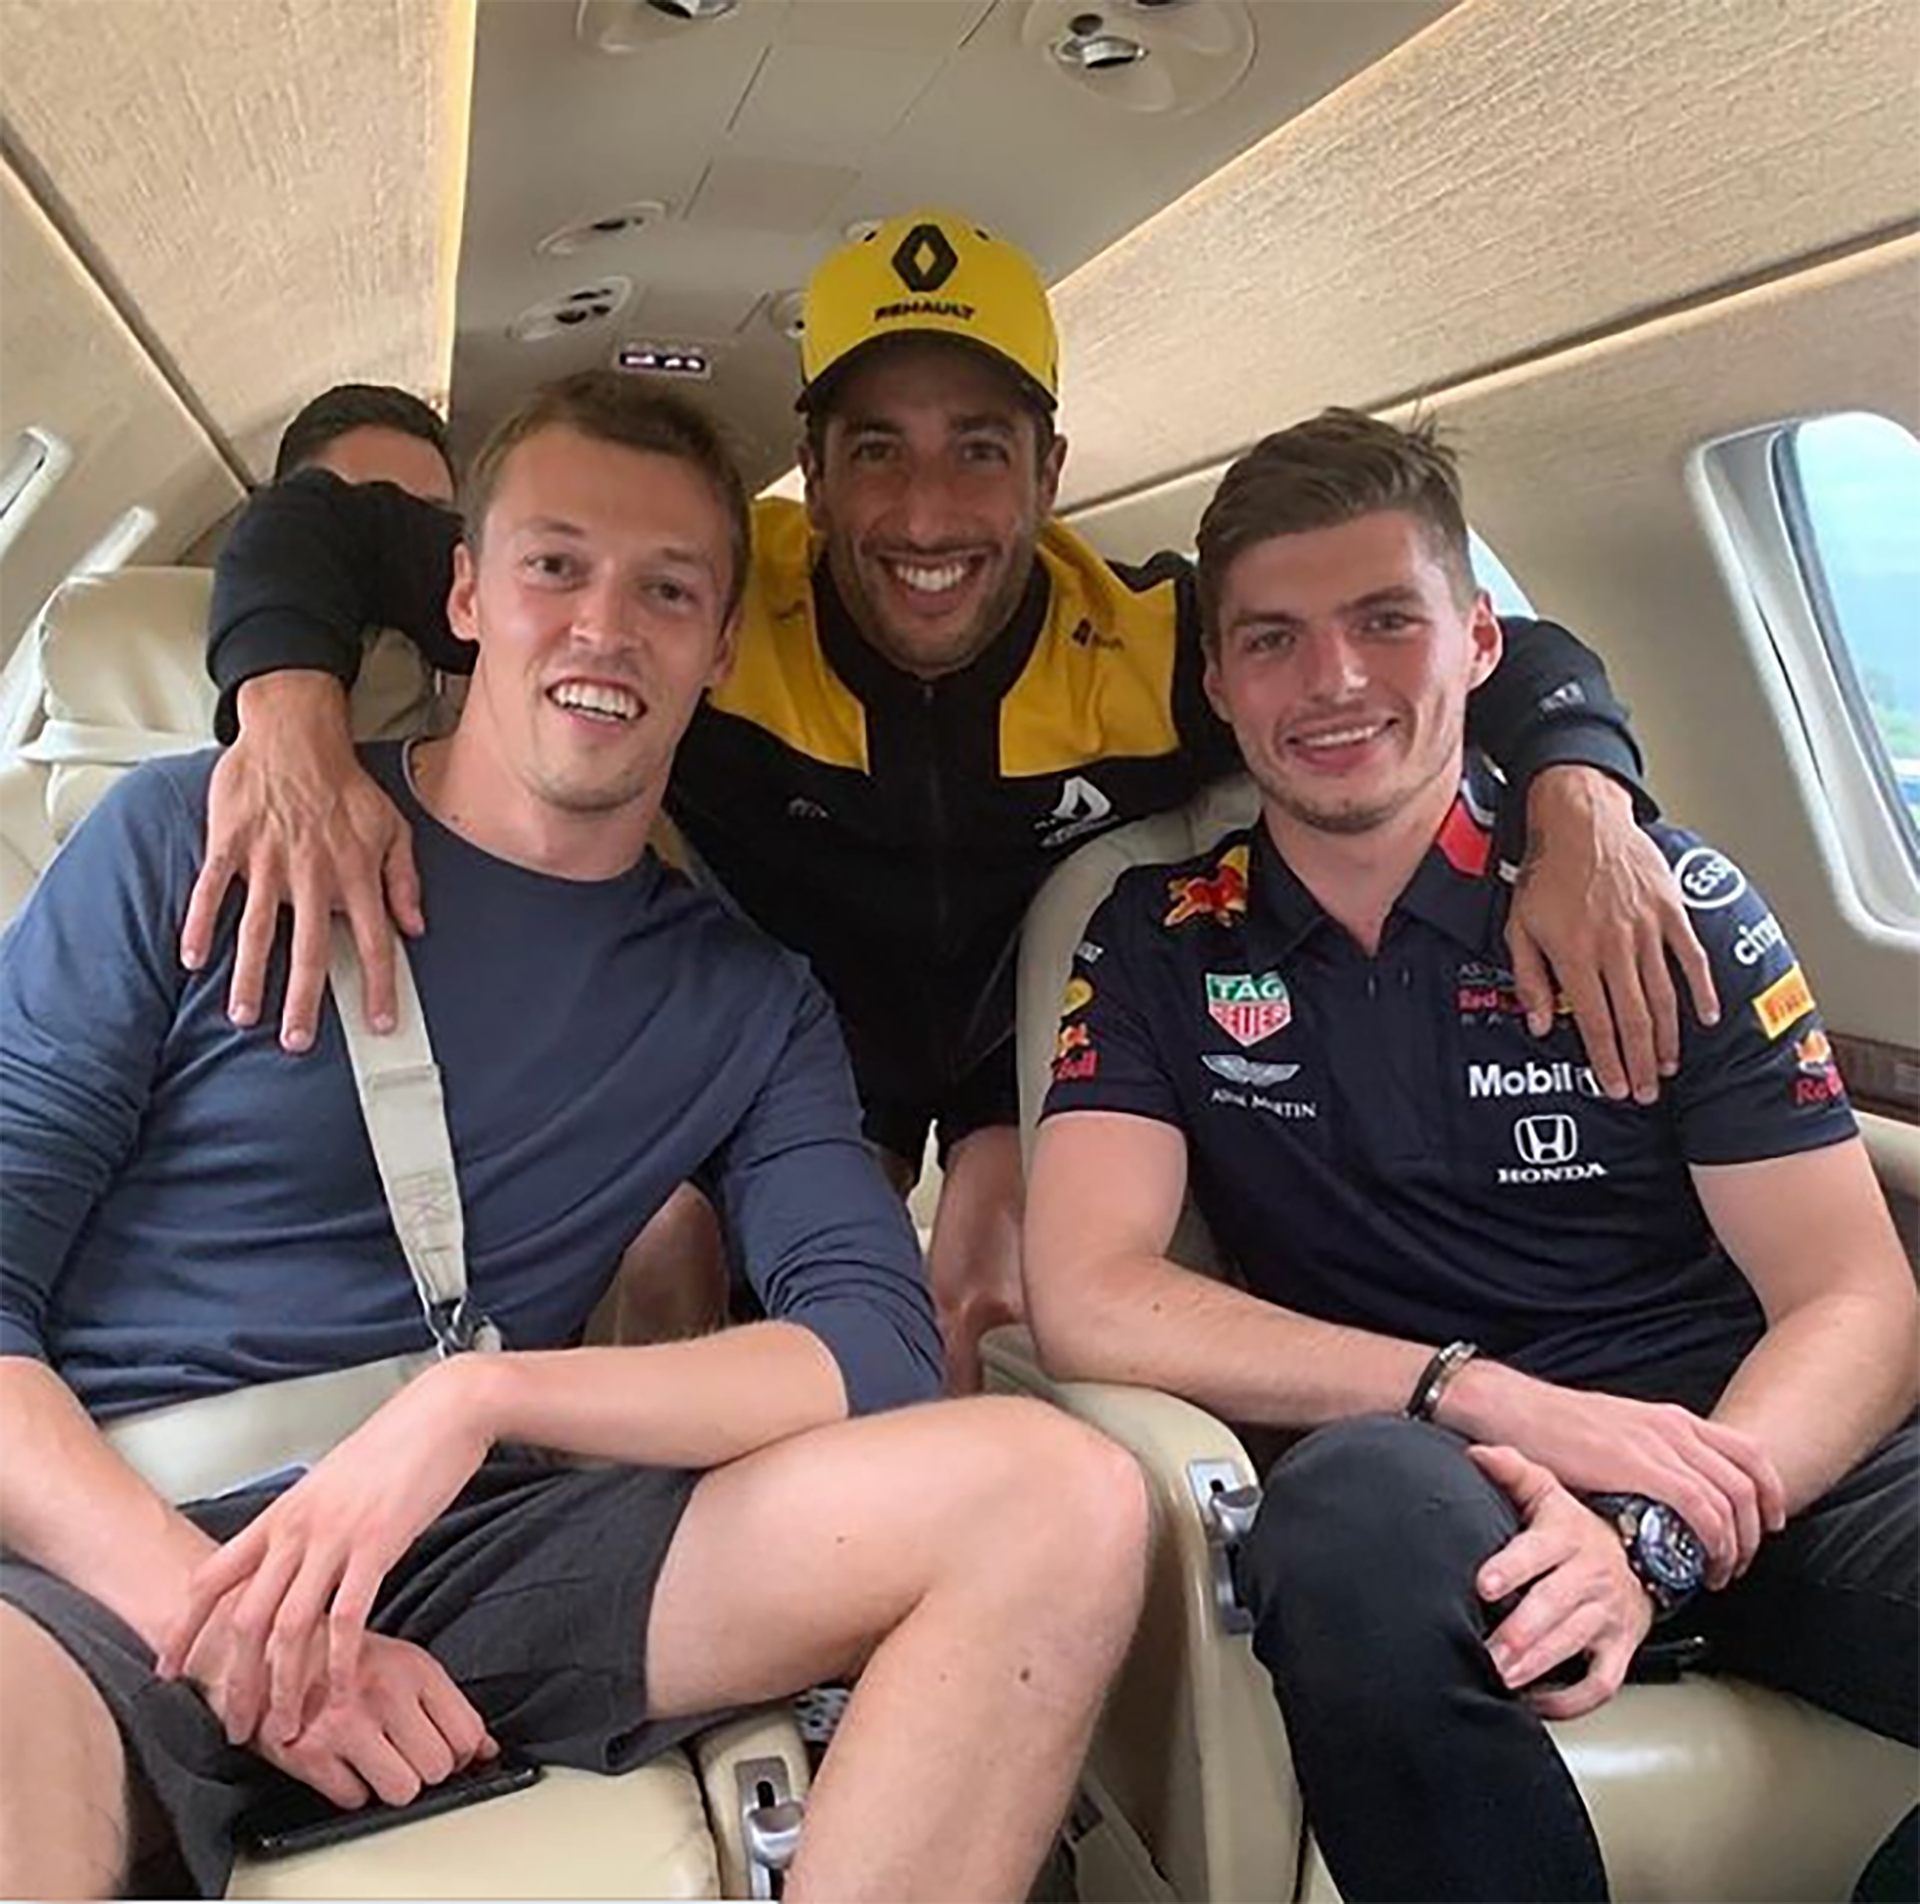 Daniil Kvyat, Daniel Ricciardo y Max Verstappen en un jet privado. La foto es de julio de 2019 (IG: maxverstappen1).